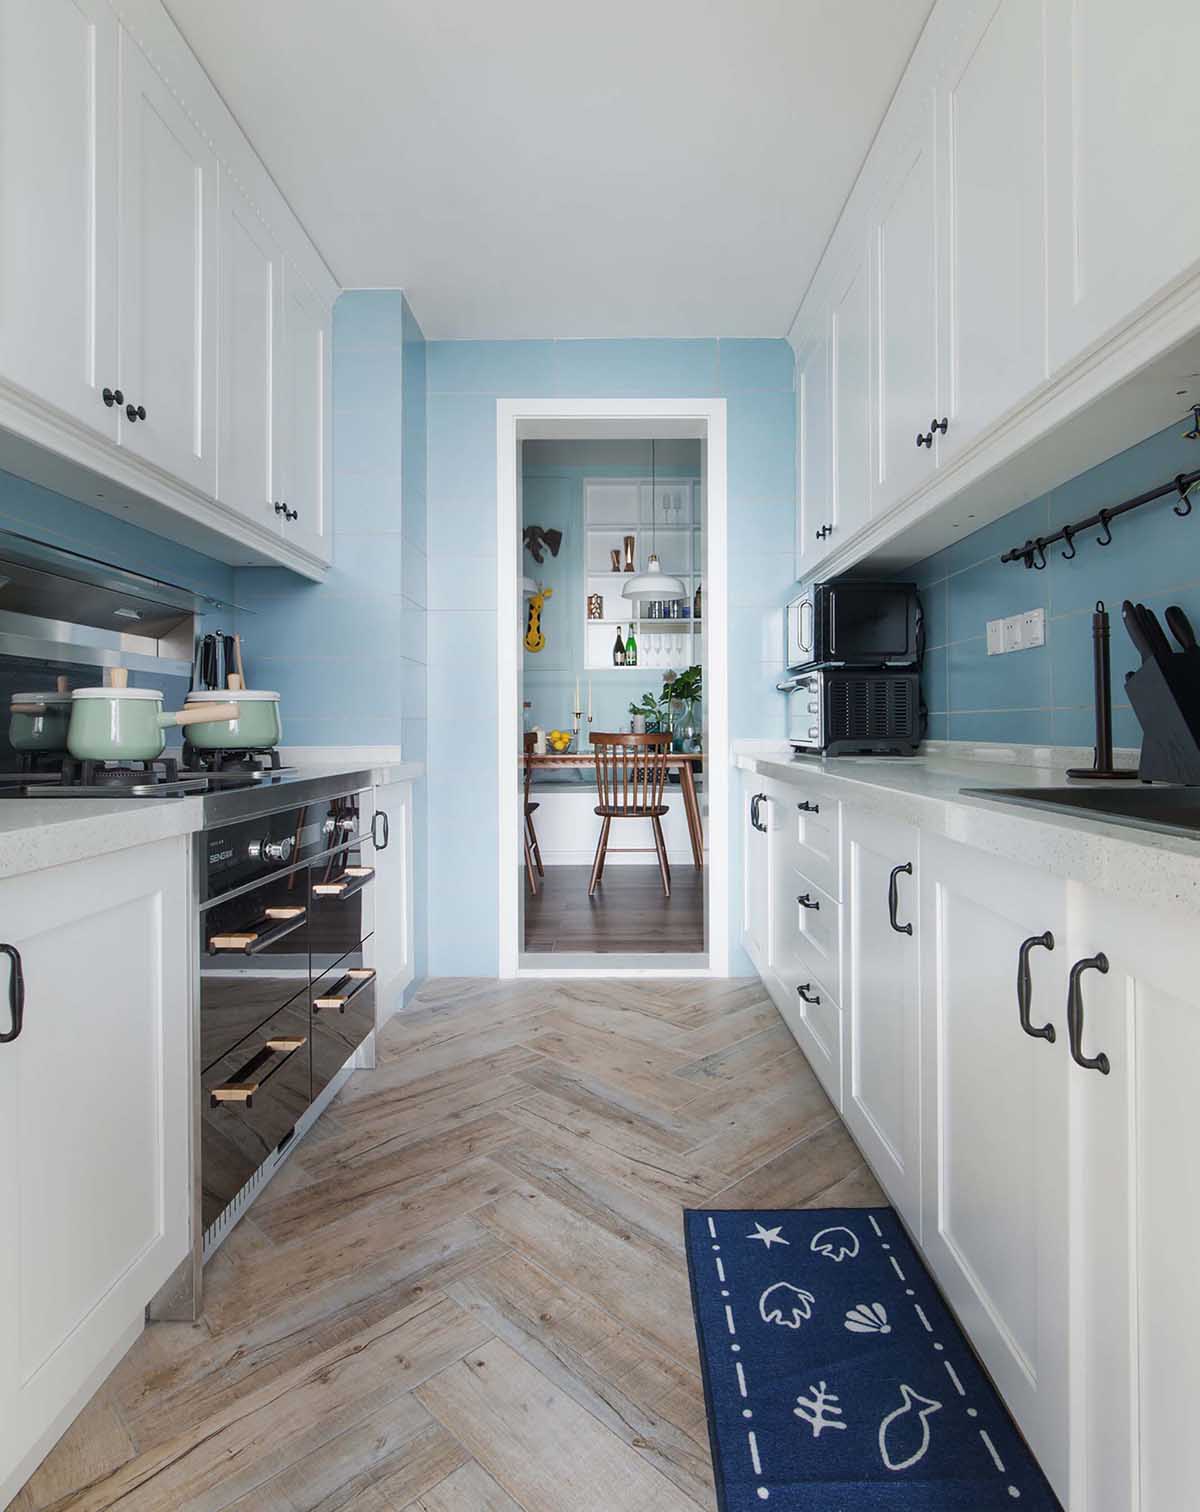 Một căn bếp ấn tượng được tạo bởi tủ bếp treo tường màu trắng kết hợp cùng màu xanh pastel. Tủ được gắn tay cầm đen, nhiều ngăn giúp tăng tiện ích và tính thẩm mỹ.